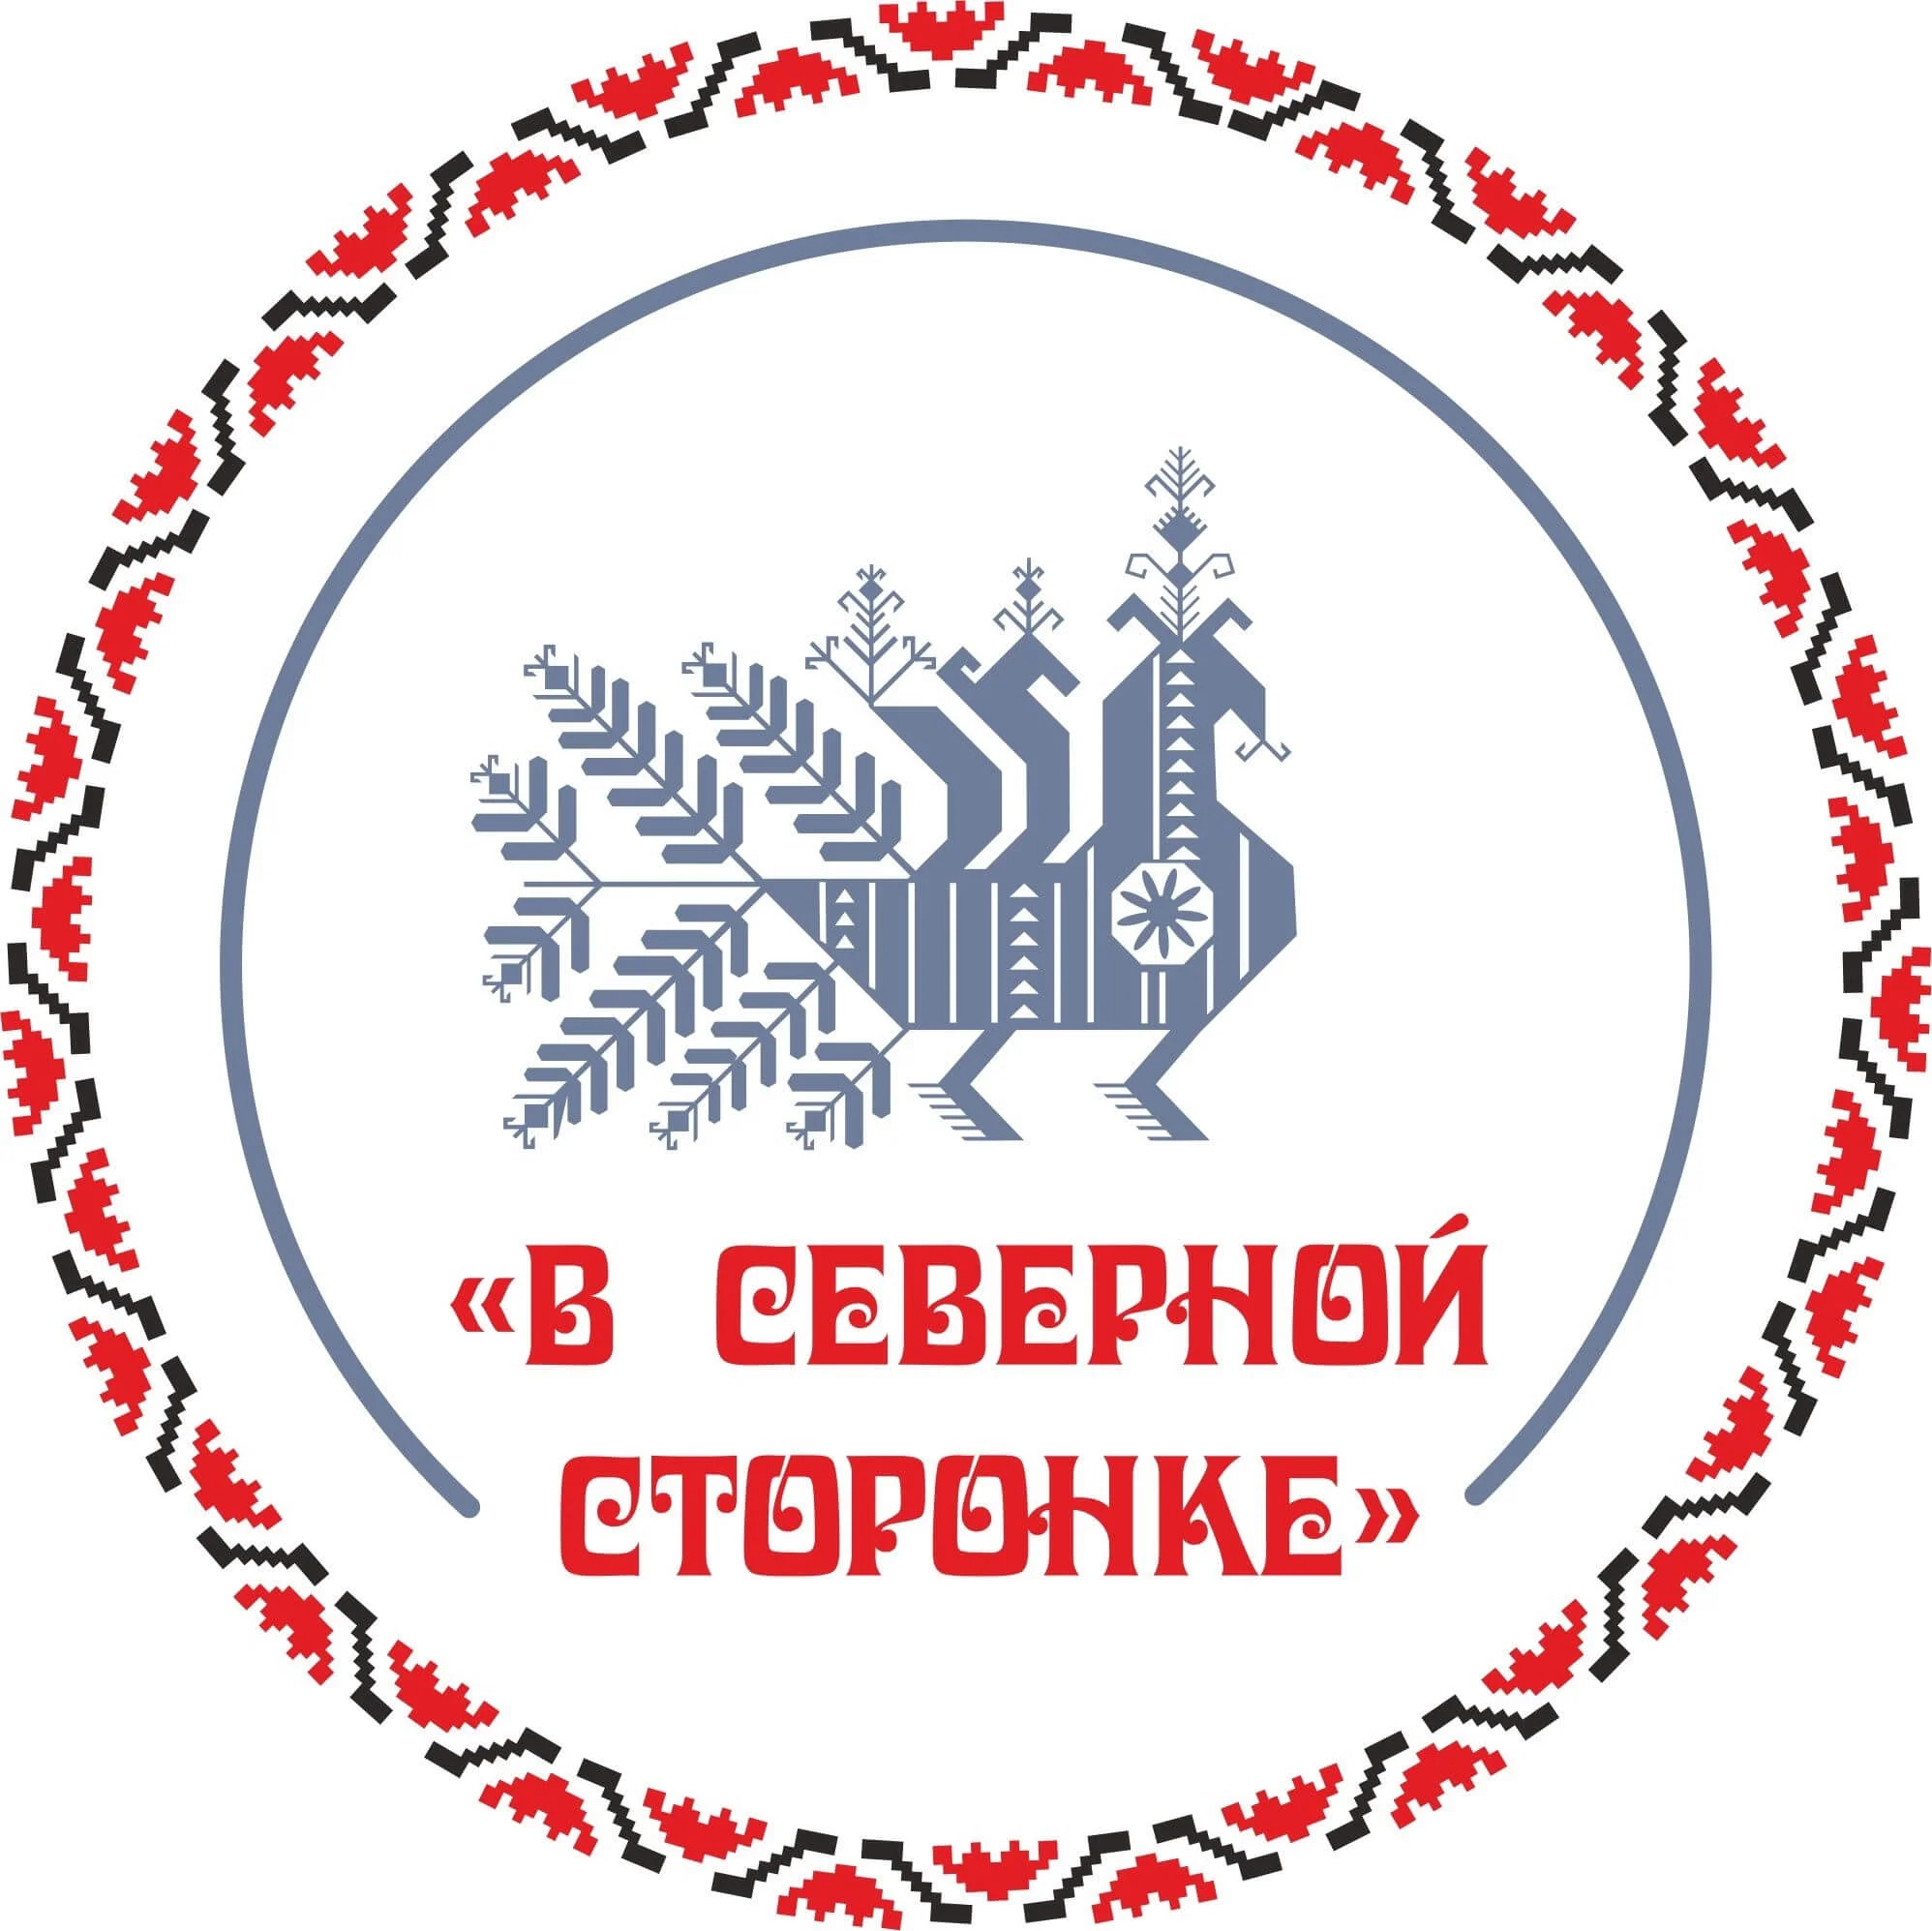 Фольклорный фестиваль «Беломорье» состоится в пятидесятый раз